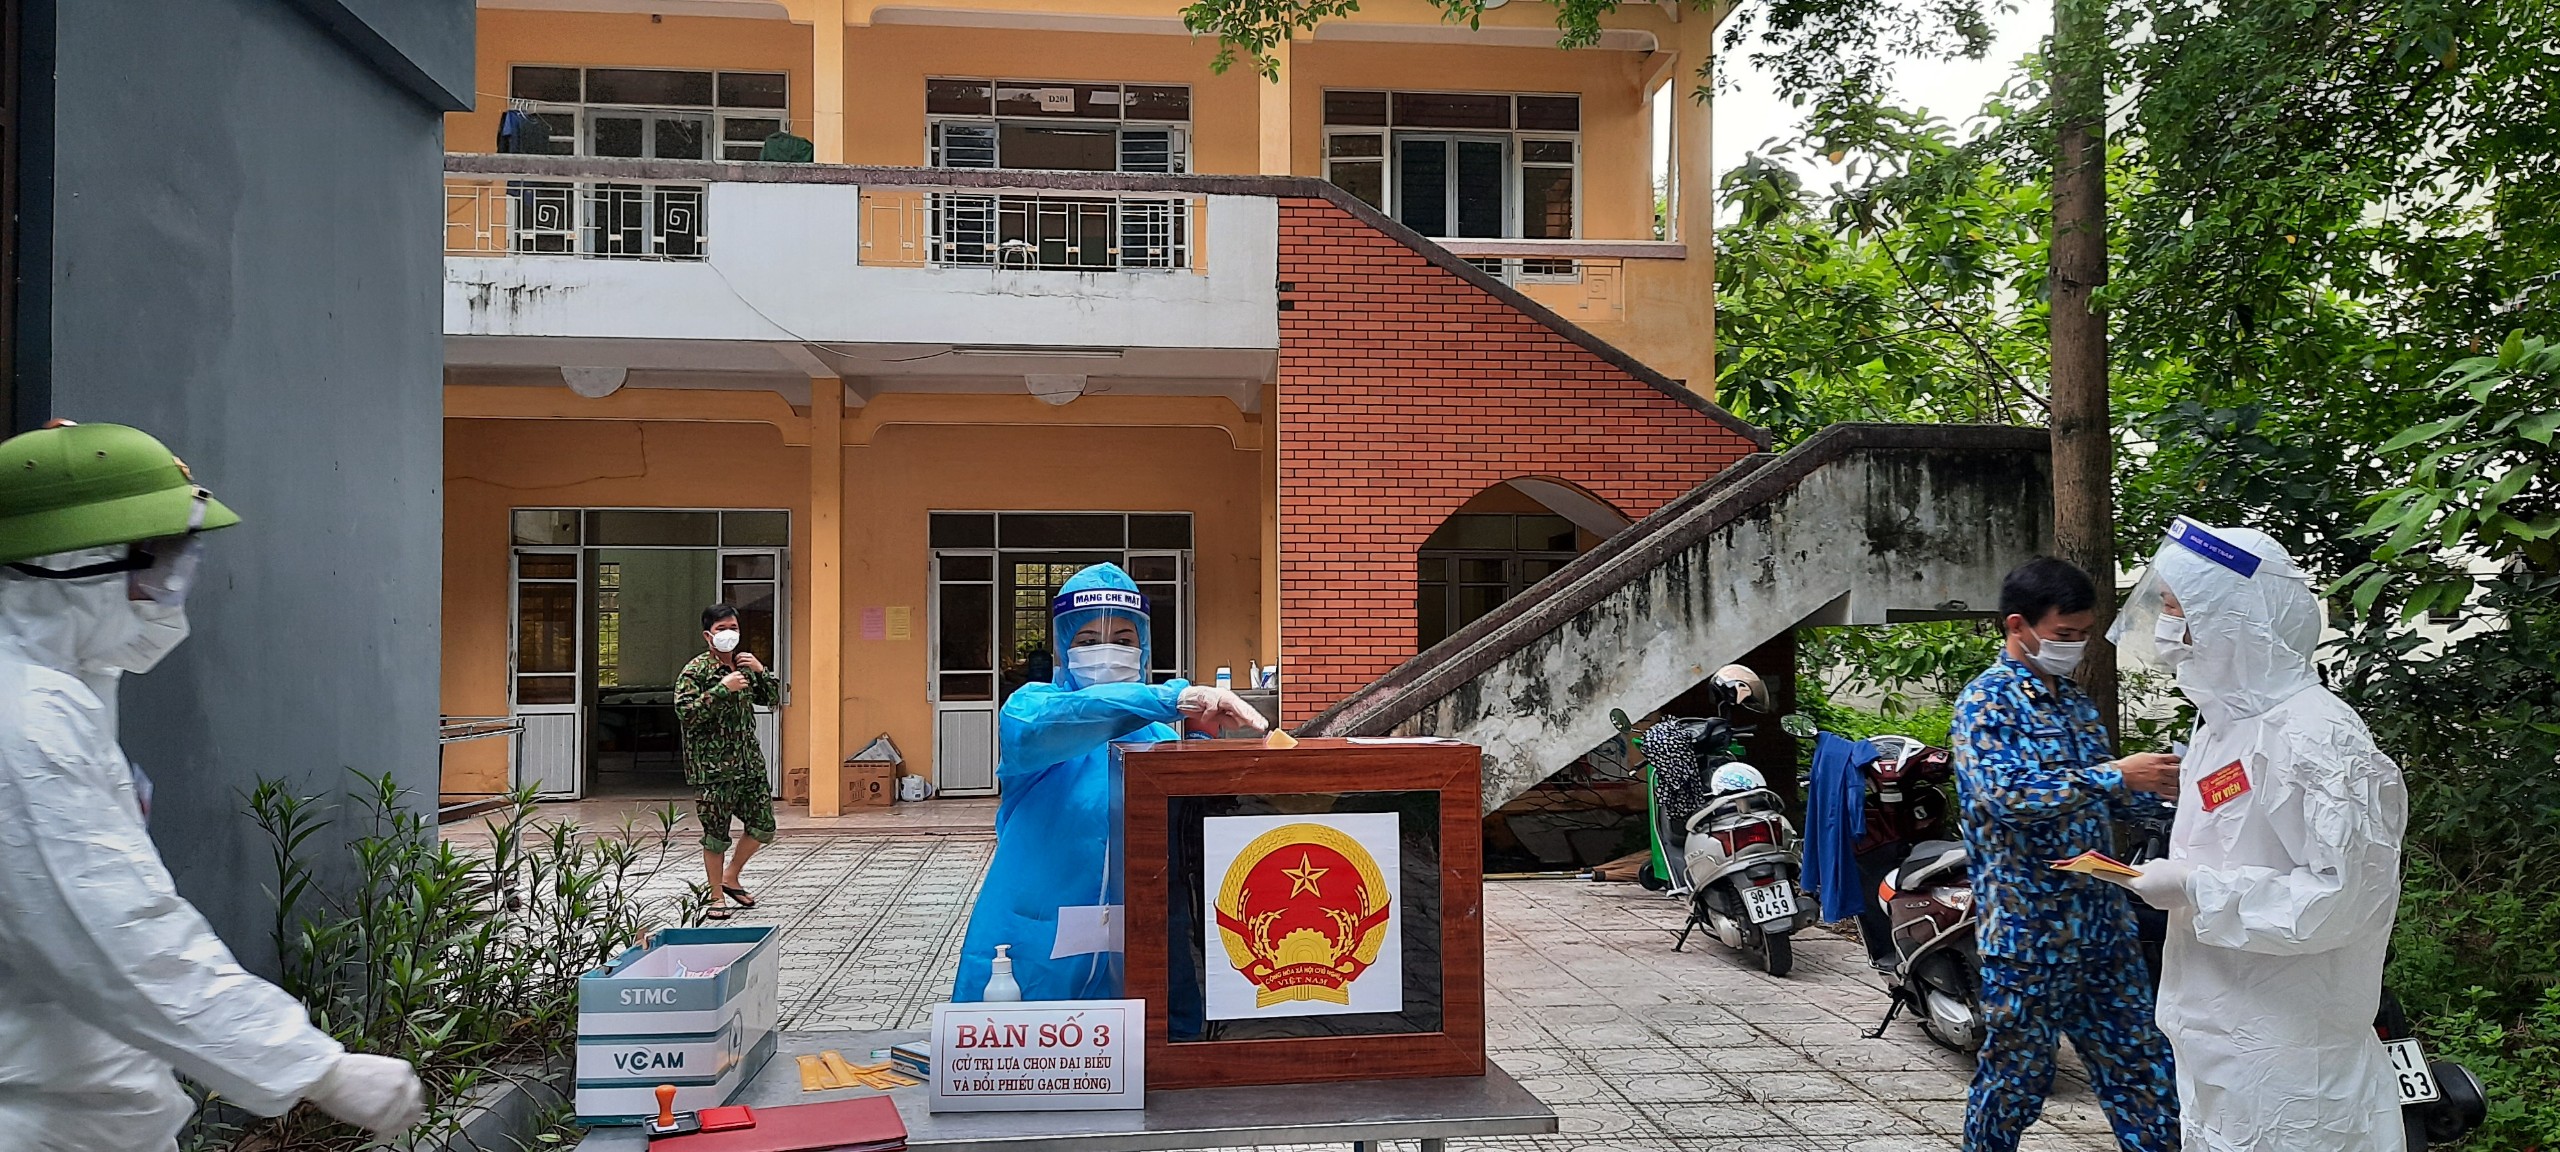 Những hình ảnh về bầu cử ở khu cách ly tại tỉnh Bắc Giang - Ảnh 4.